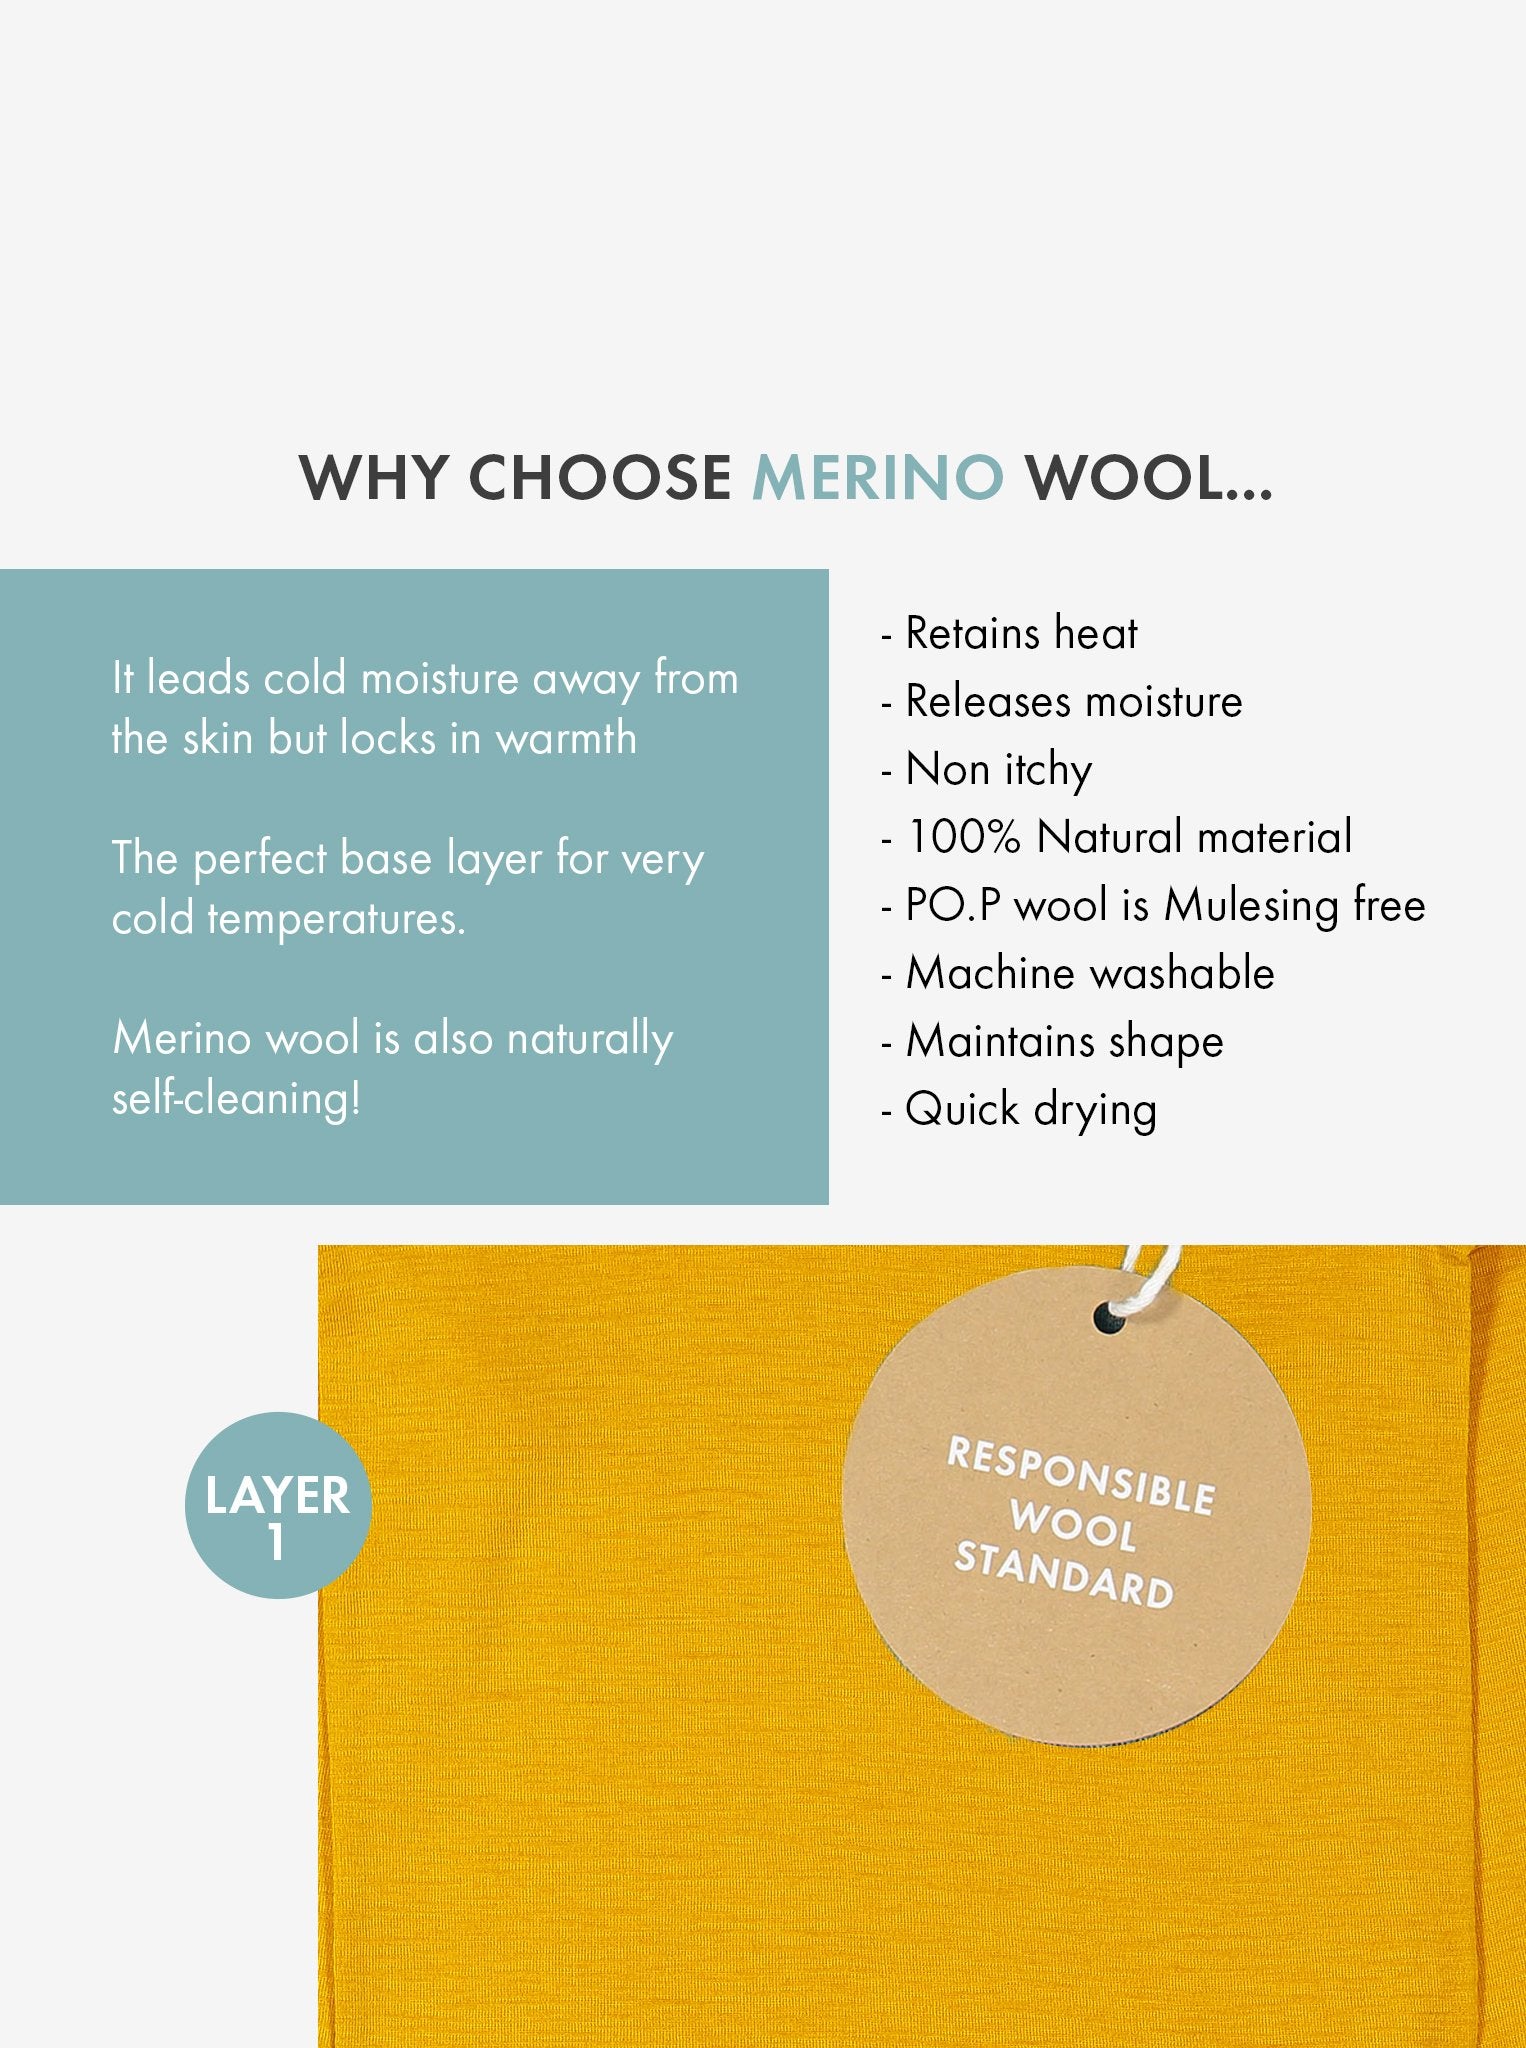 why merino wool?